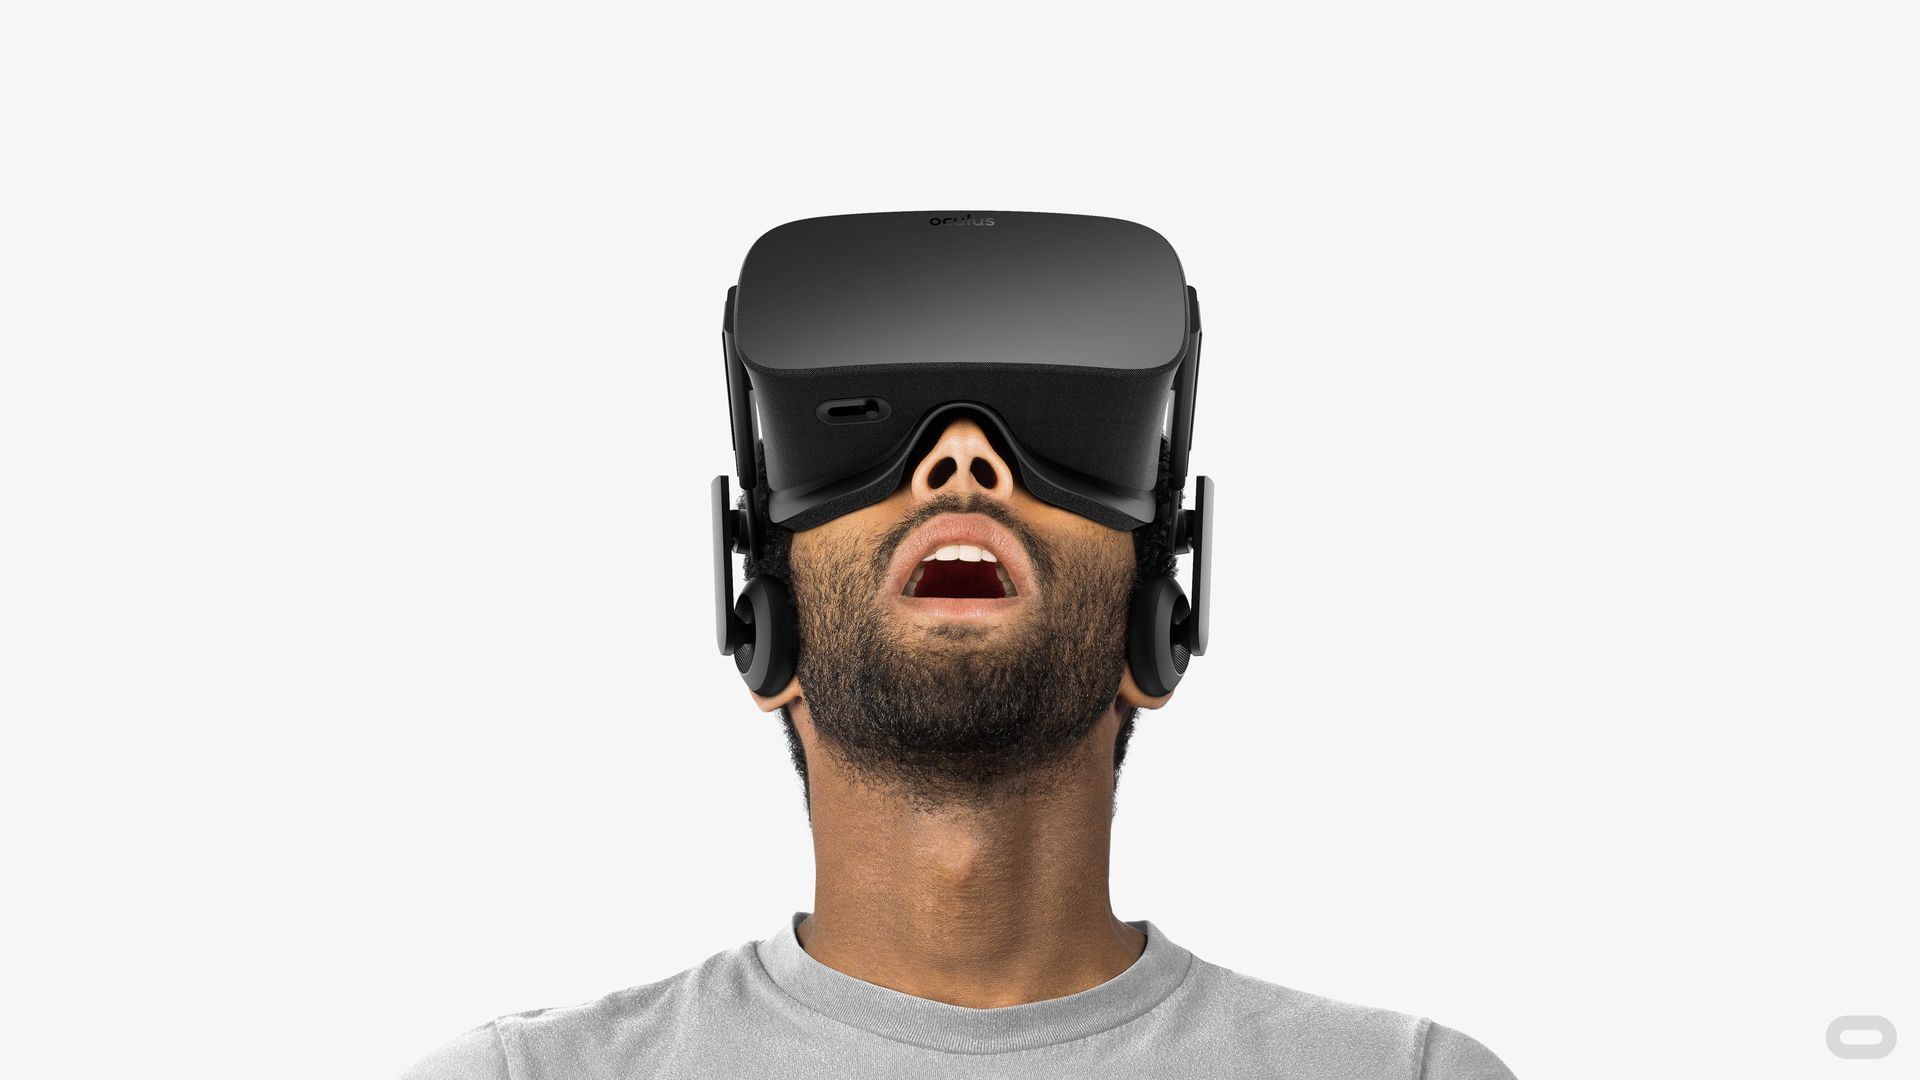 A man using an Oculus Rift headset